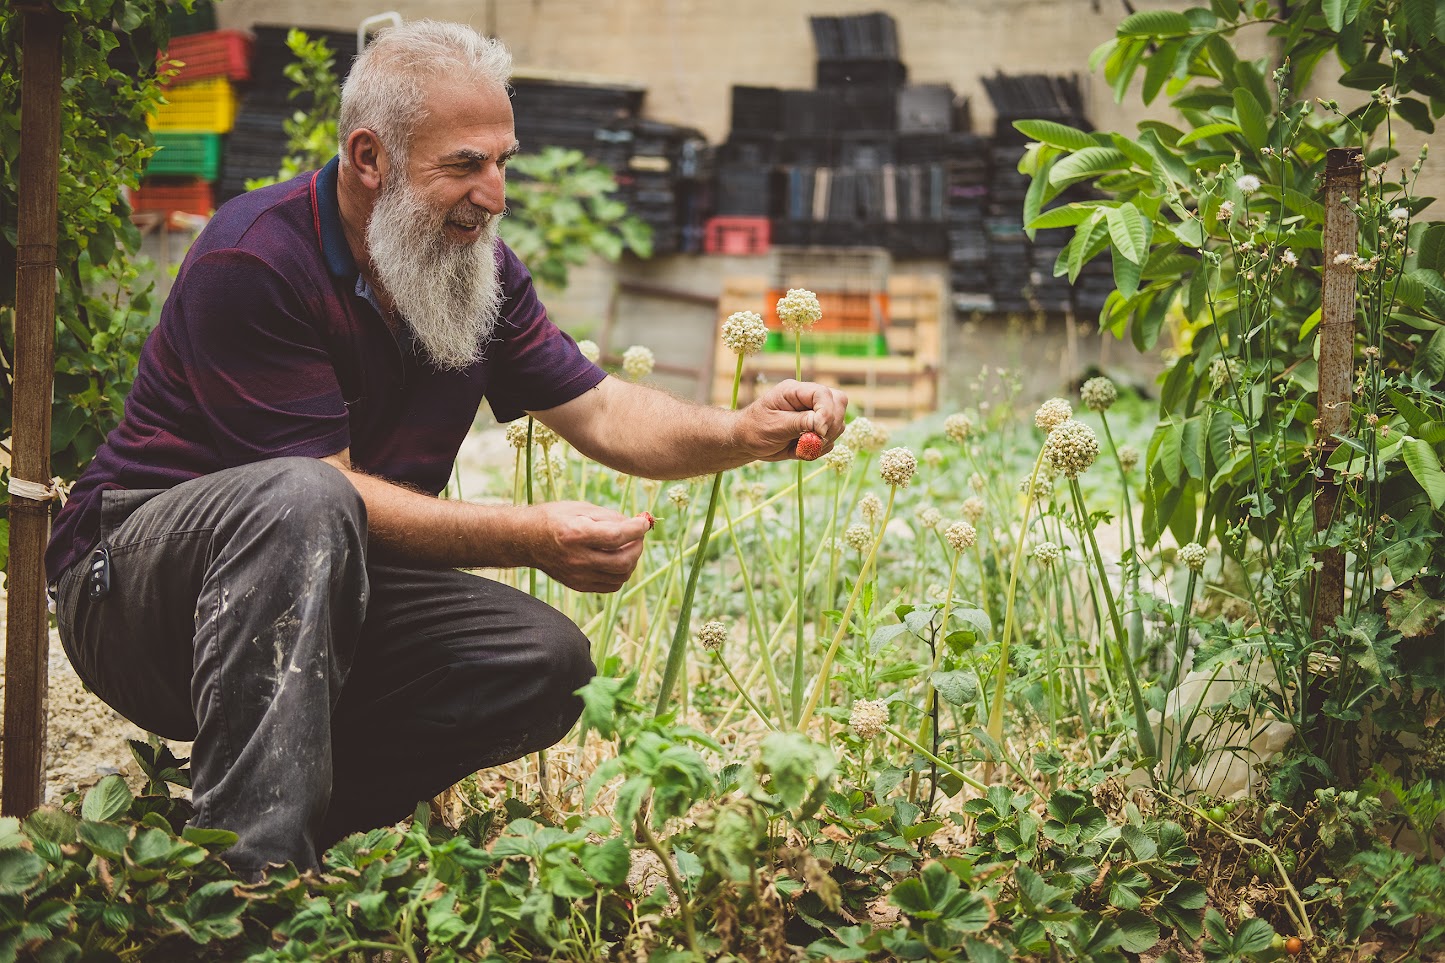 Elderly man in work clothing, gardening